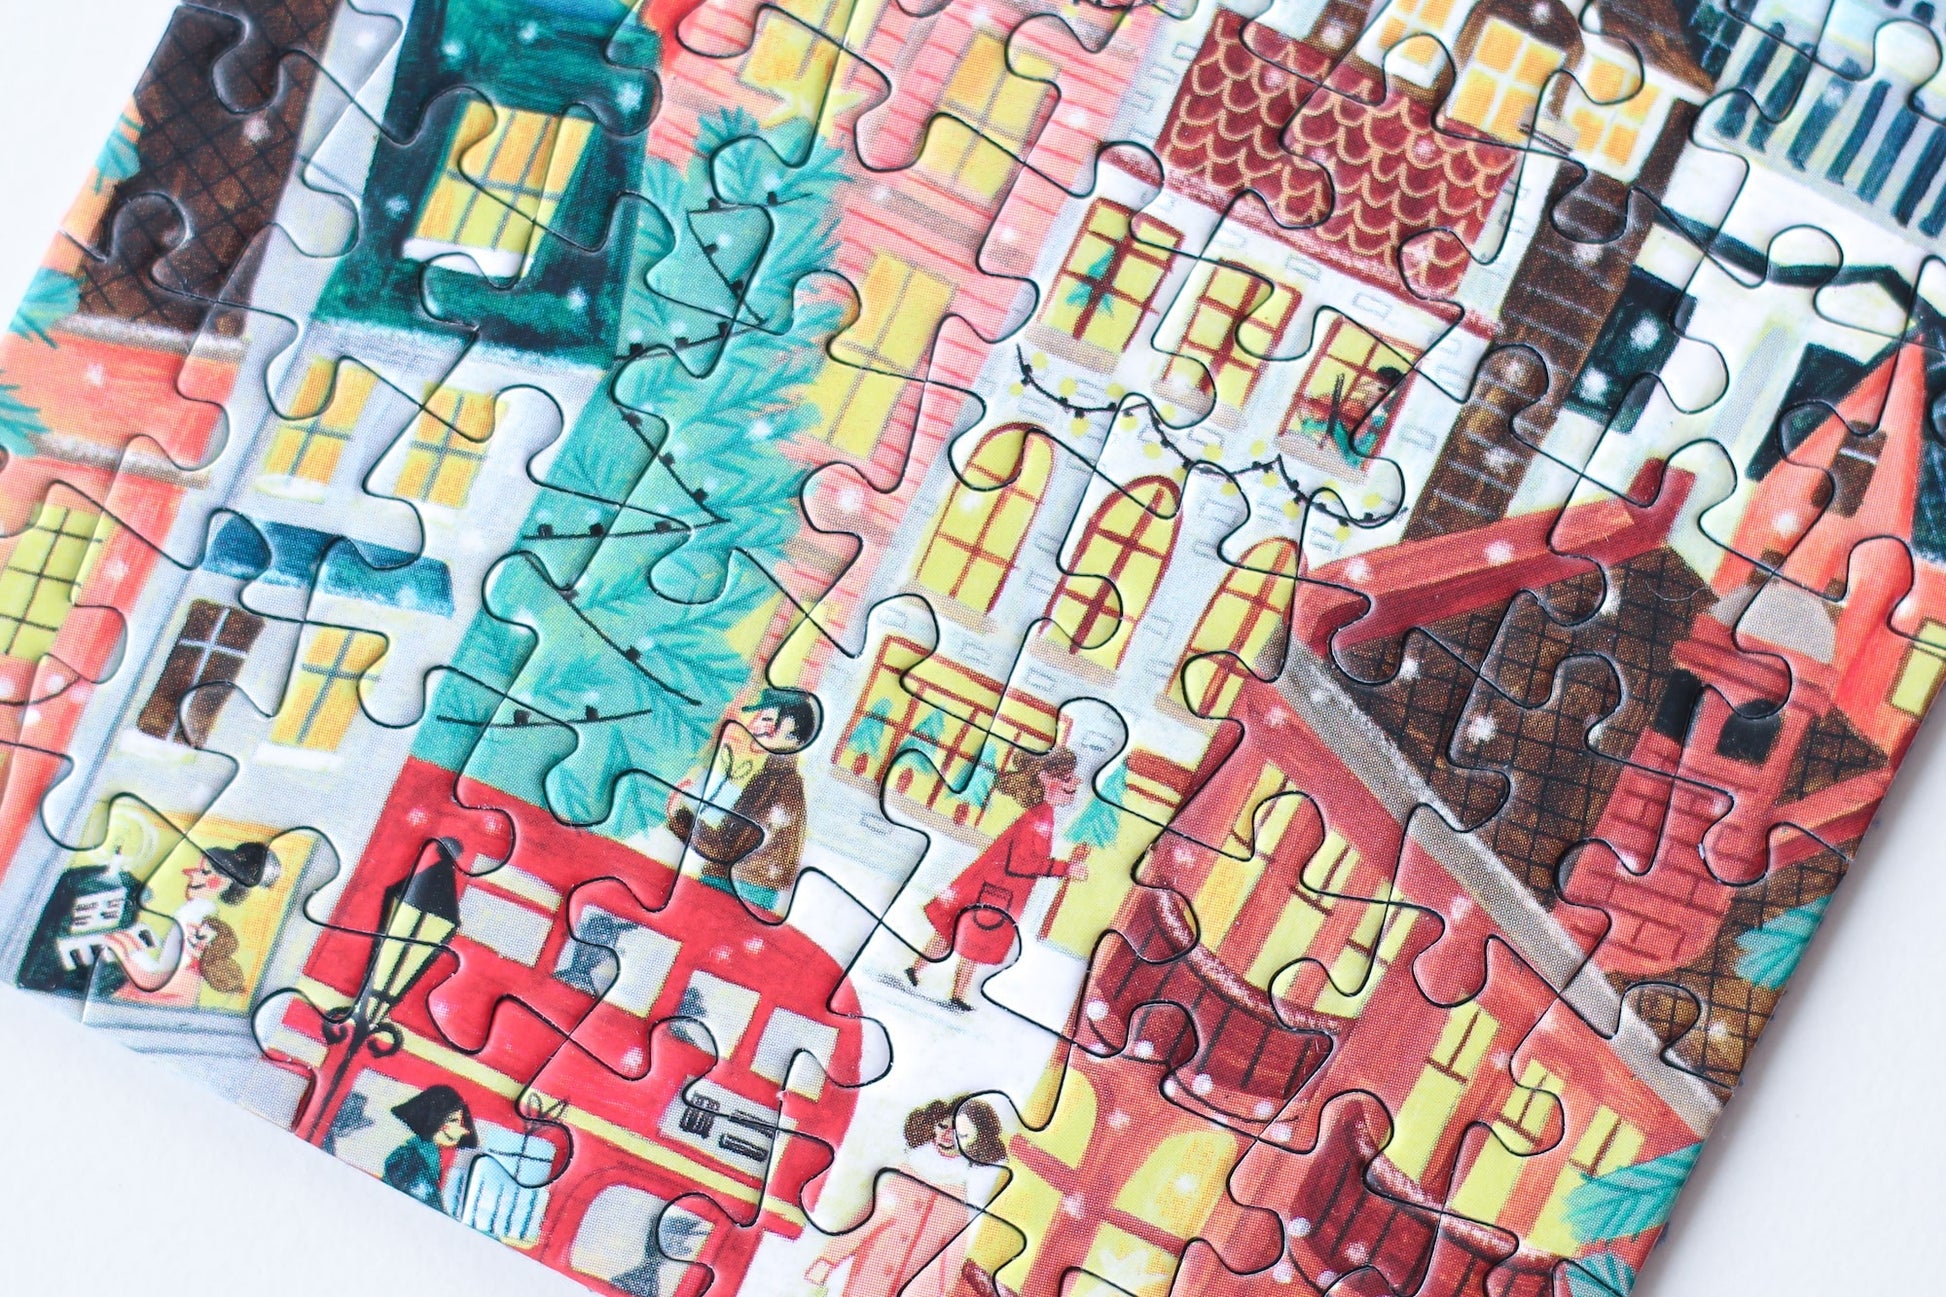 99-teiliges Minipuzzle für Erwachsene, das ein verschneites London zur Weihnachtszeit zeigt.